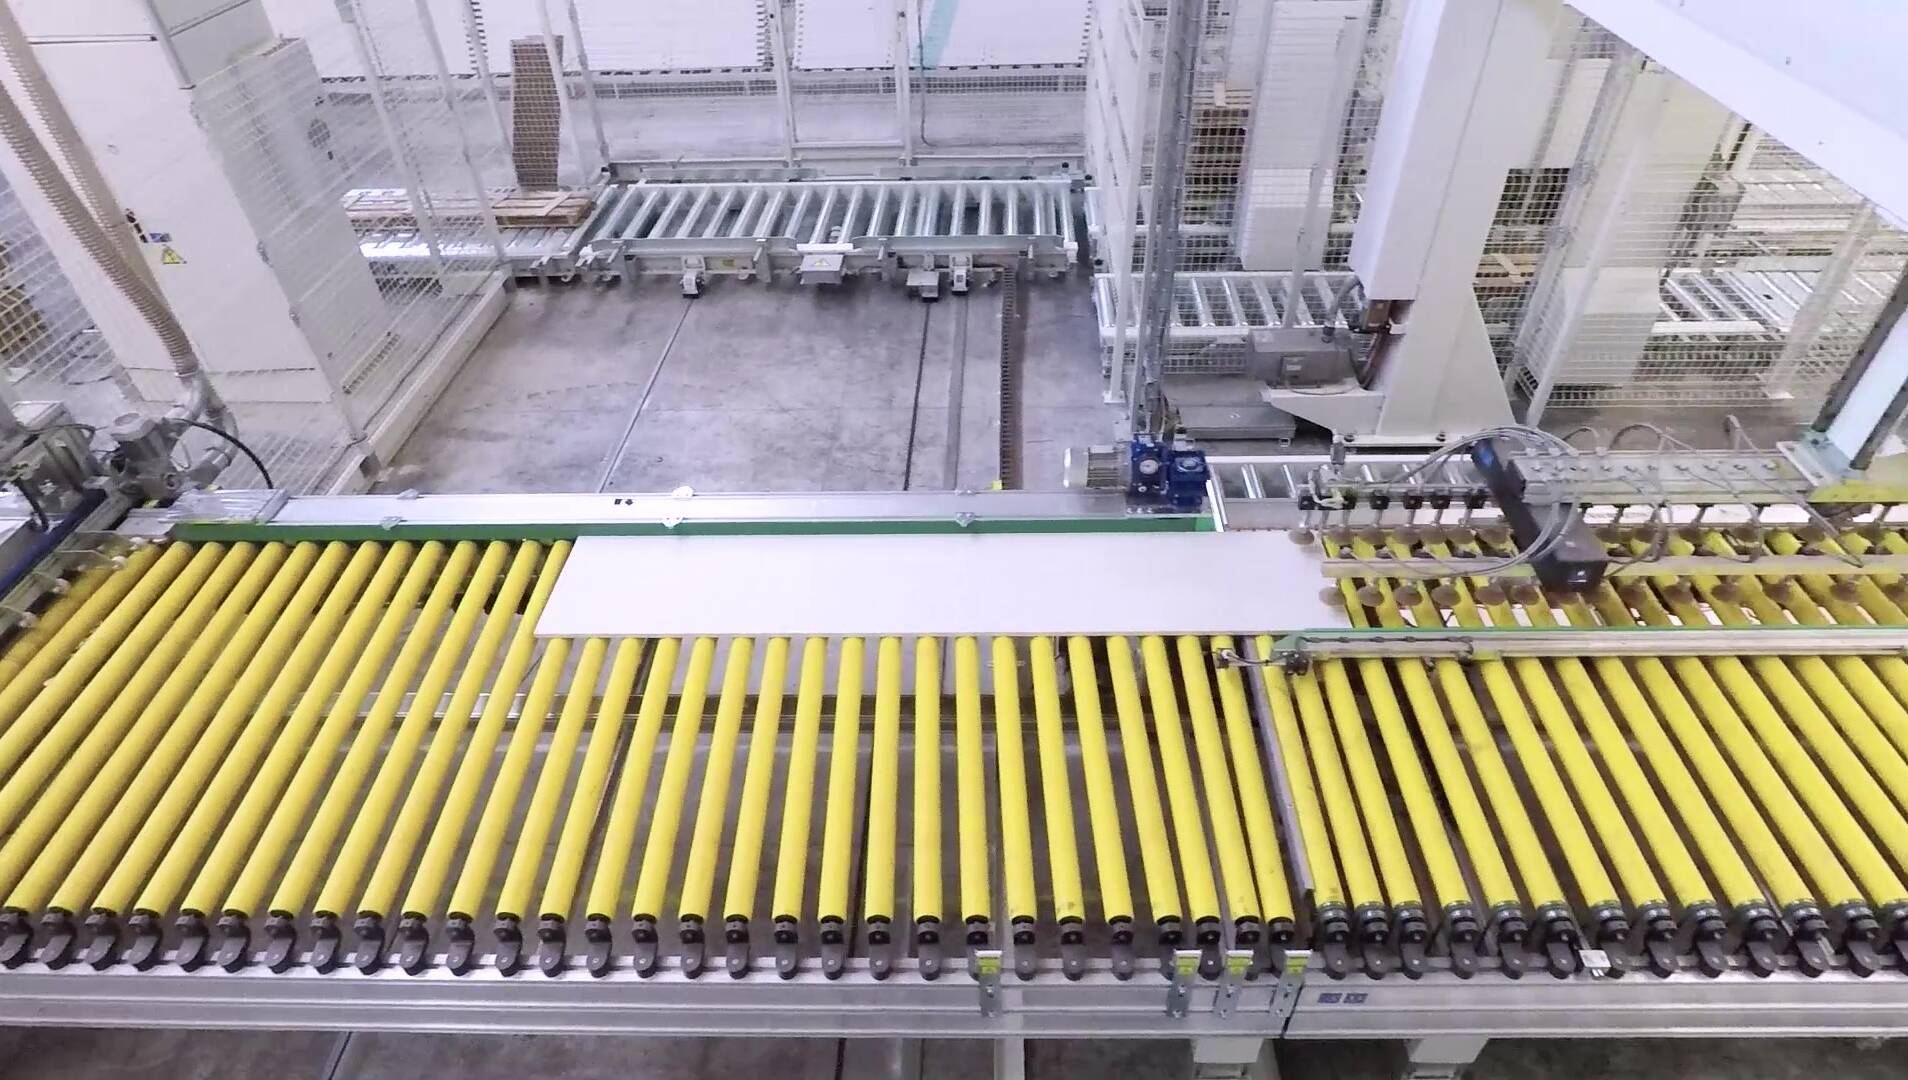 Systèmes d'automation - Systèmes de manutention - mahros conveyors